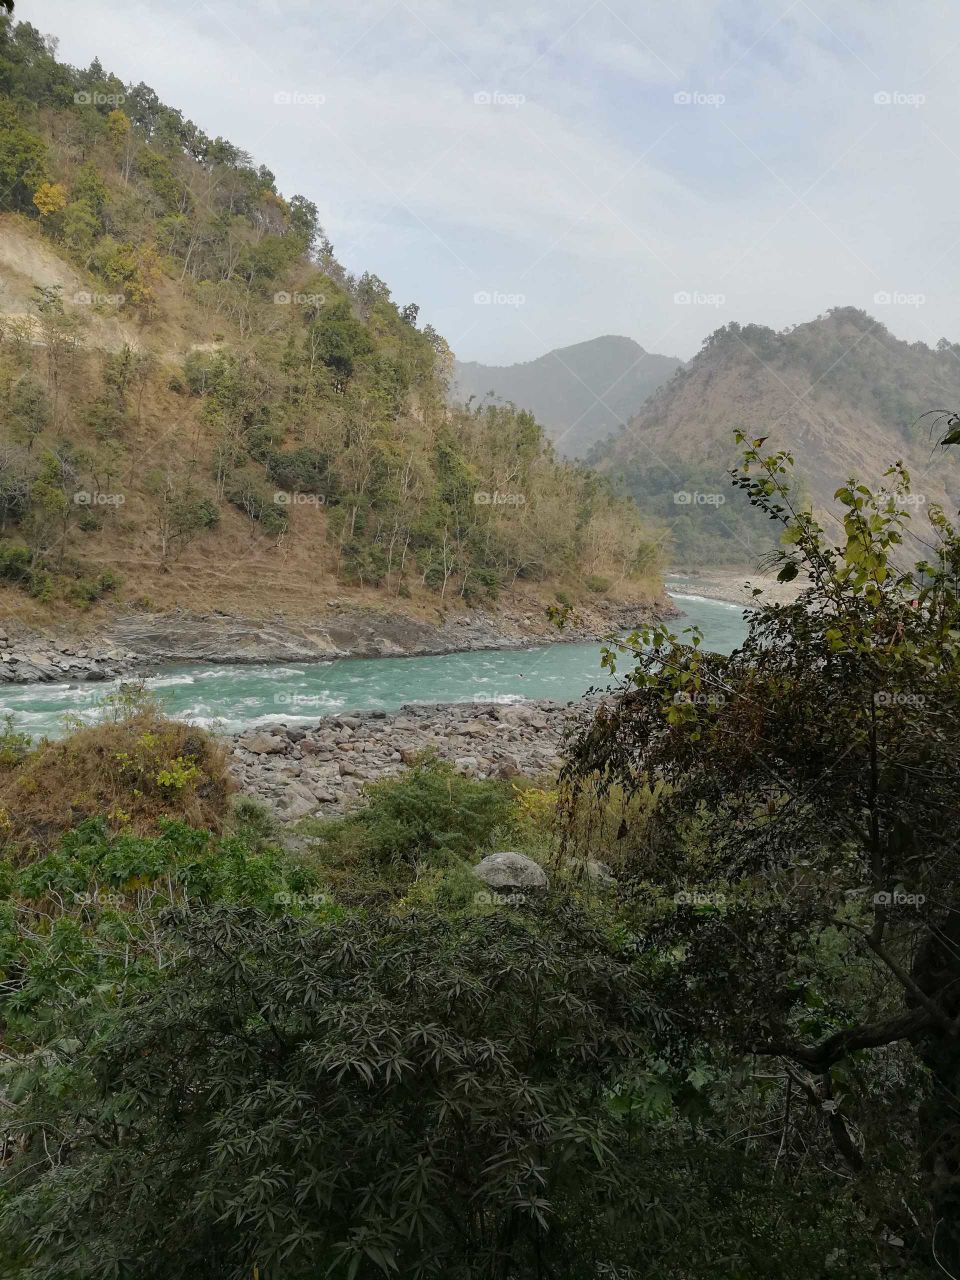 Ganga Beauty in Mountain of Rishikesh